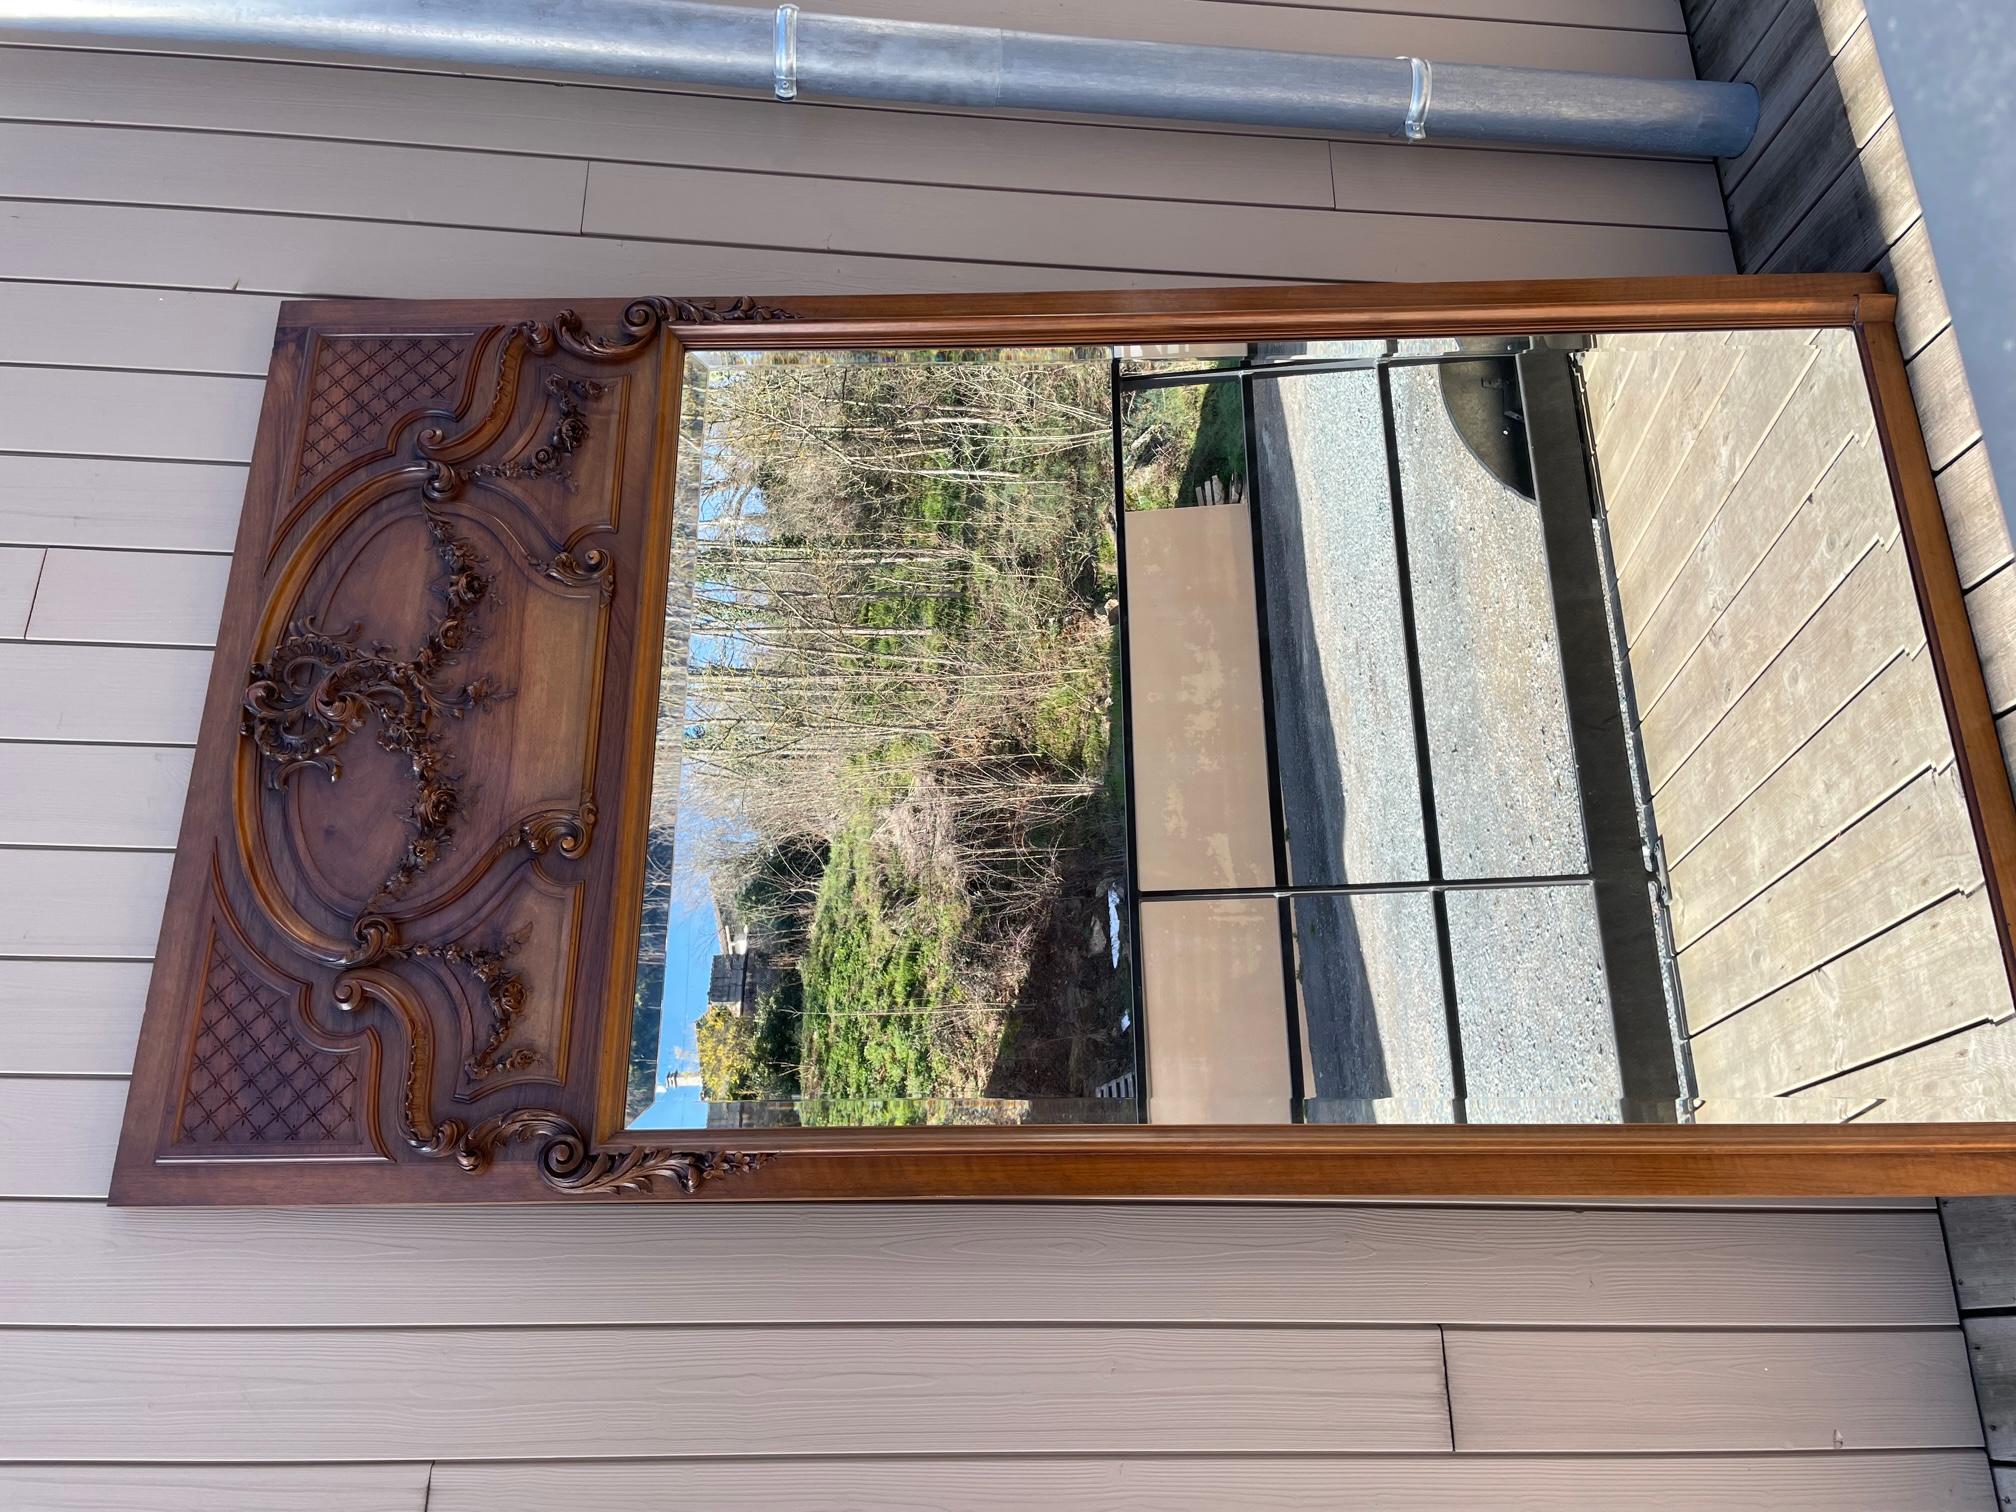 Großer Spiegel im Louis-XV-Stil aus Nussbaumholz vom Anfang des 20. Jahrhunderts.
Abgeschrägter Spiegel. Sehr schöne Details von Blumen in das Holz eingraviert.
Sehr gute Qualität und guter Zustand.